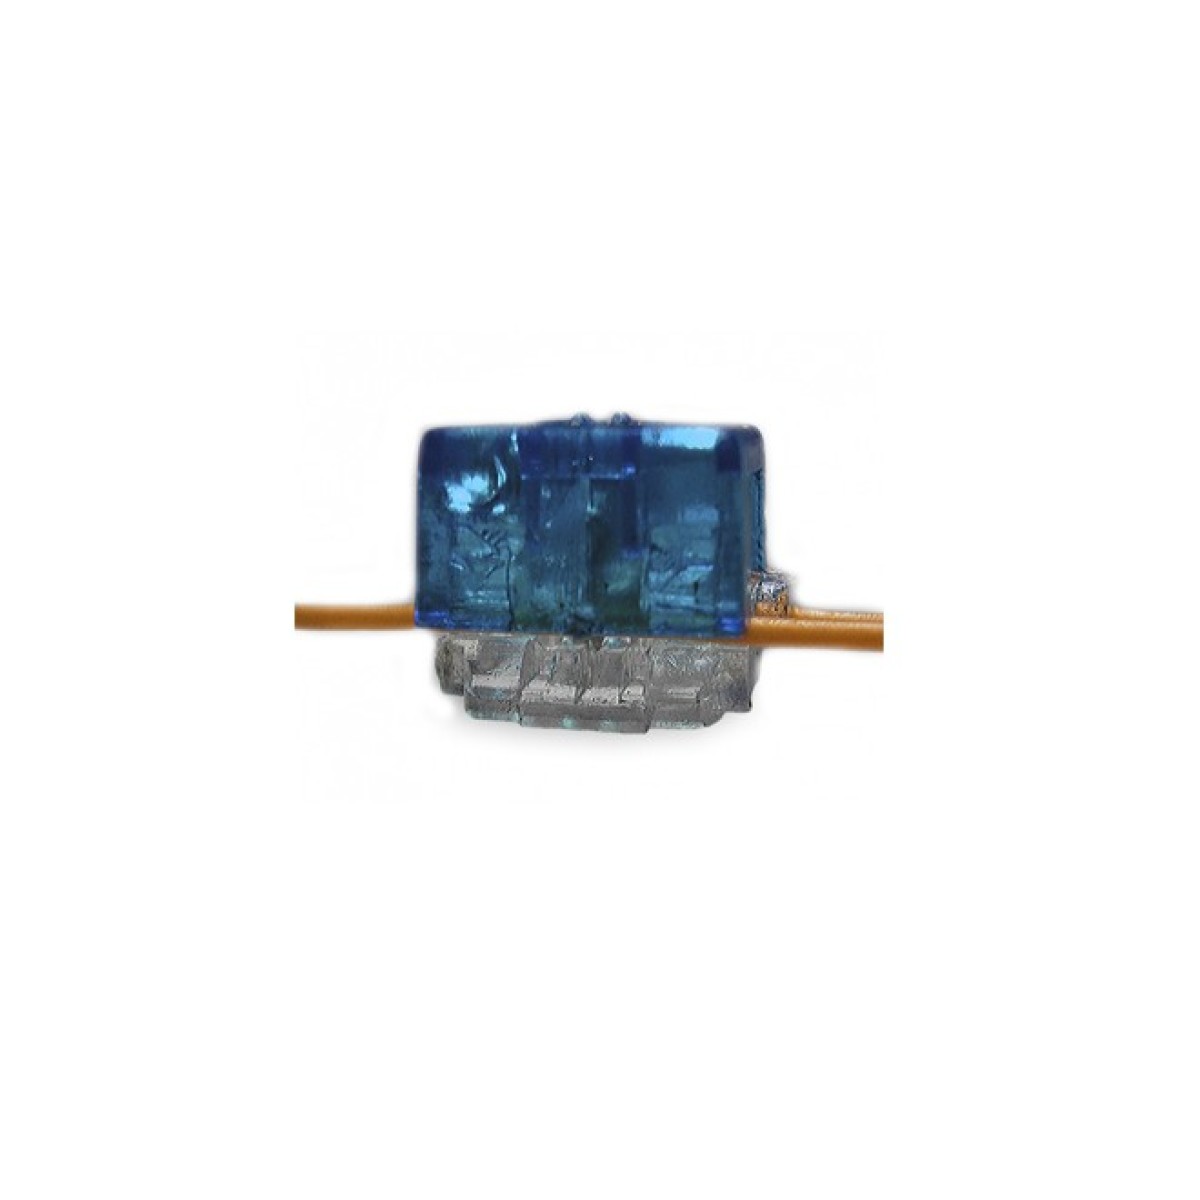 Скотчлок В-тип (двухсторонний, 2 провода 0,4…0,7 мм), синий Kingda - 100 шт. 98_98.jpg - фото 4